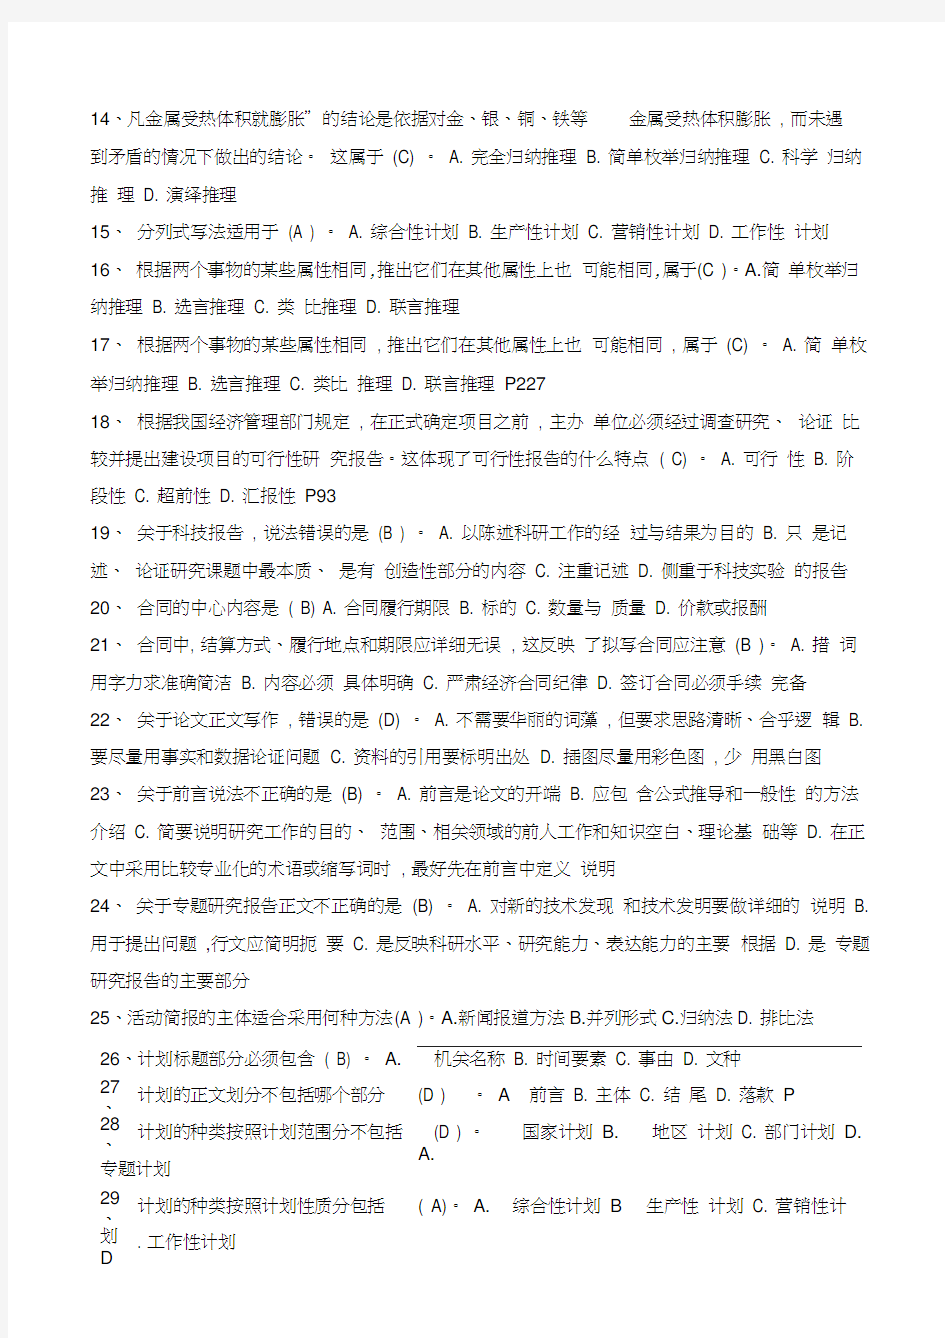 徐州市专业技术人员继续教育-常用文体写作题集及答案教学教材